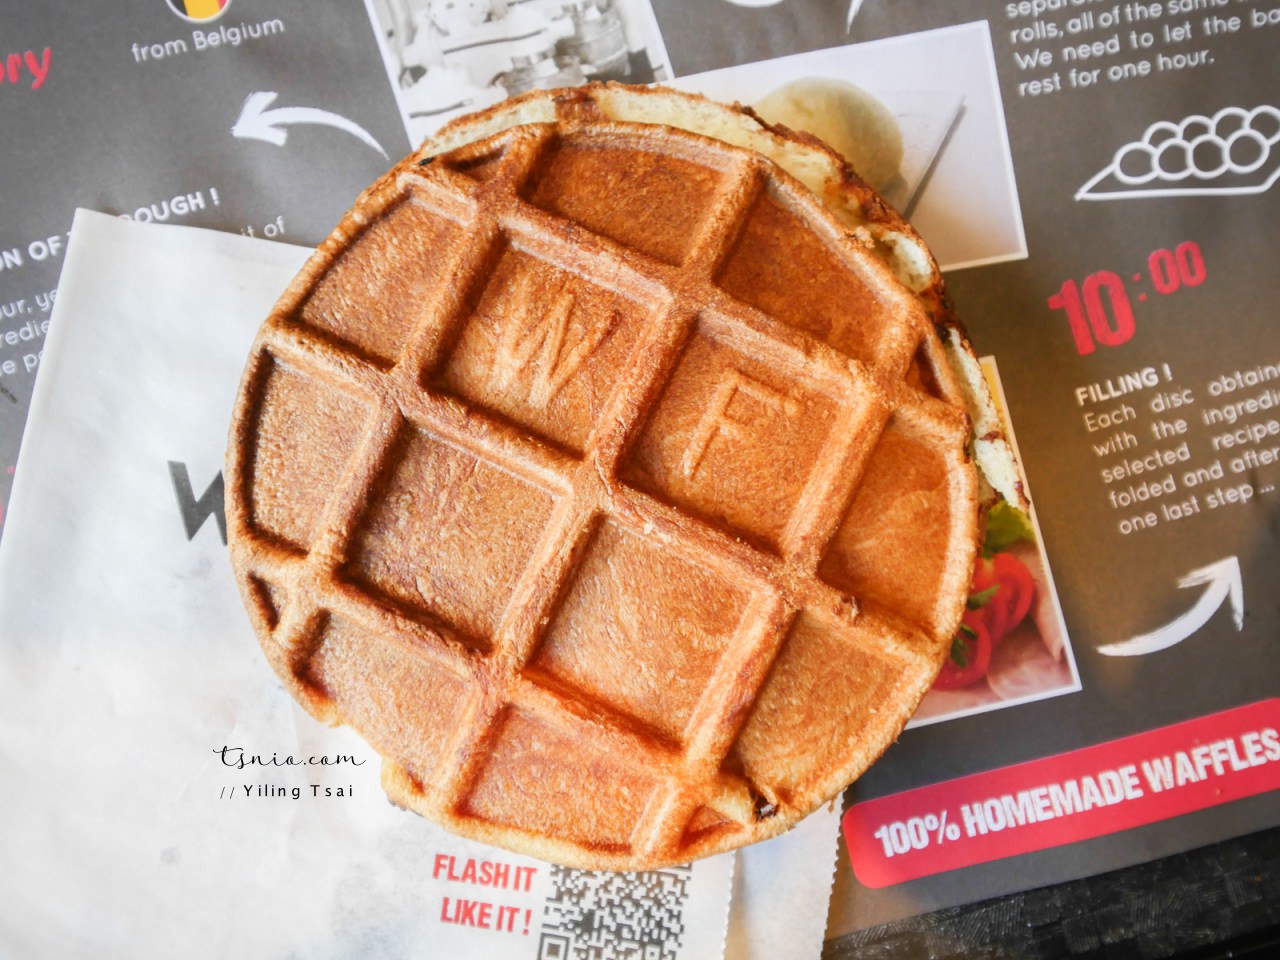 比利時鬆餅推薦 Waffle Factory 布魯塞爾美食